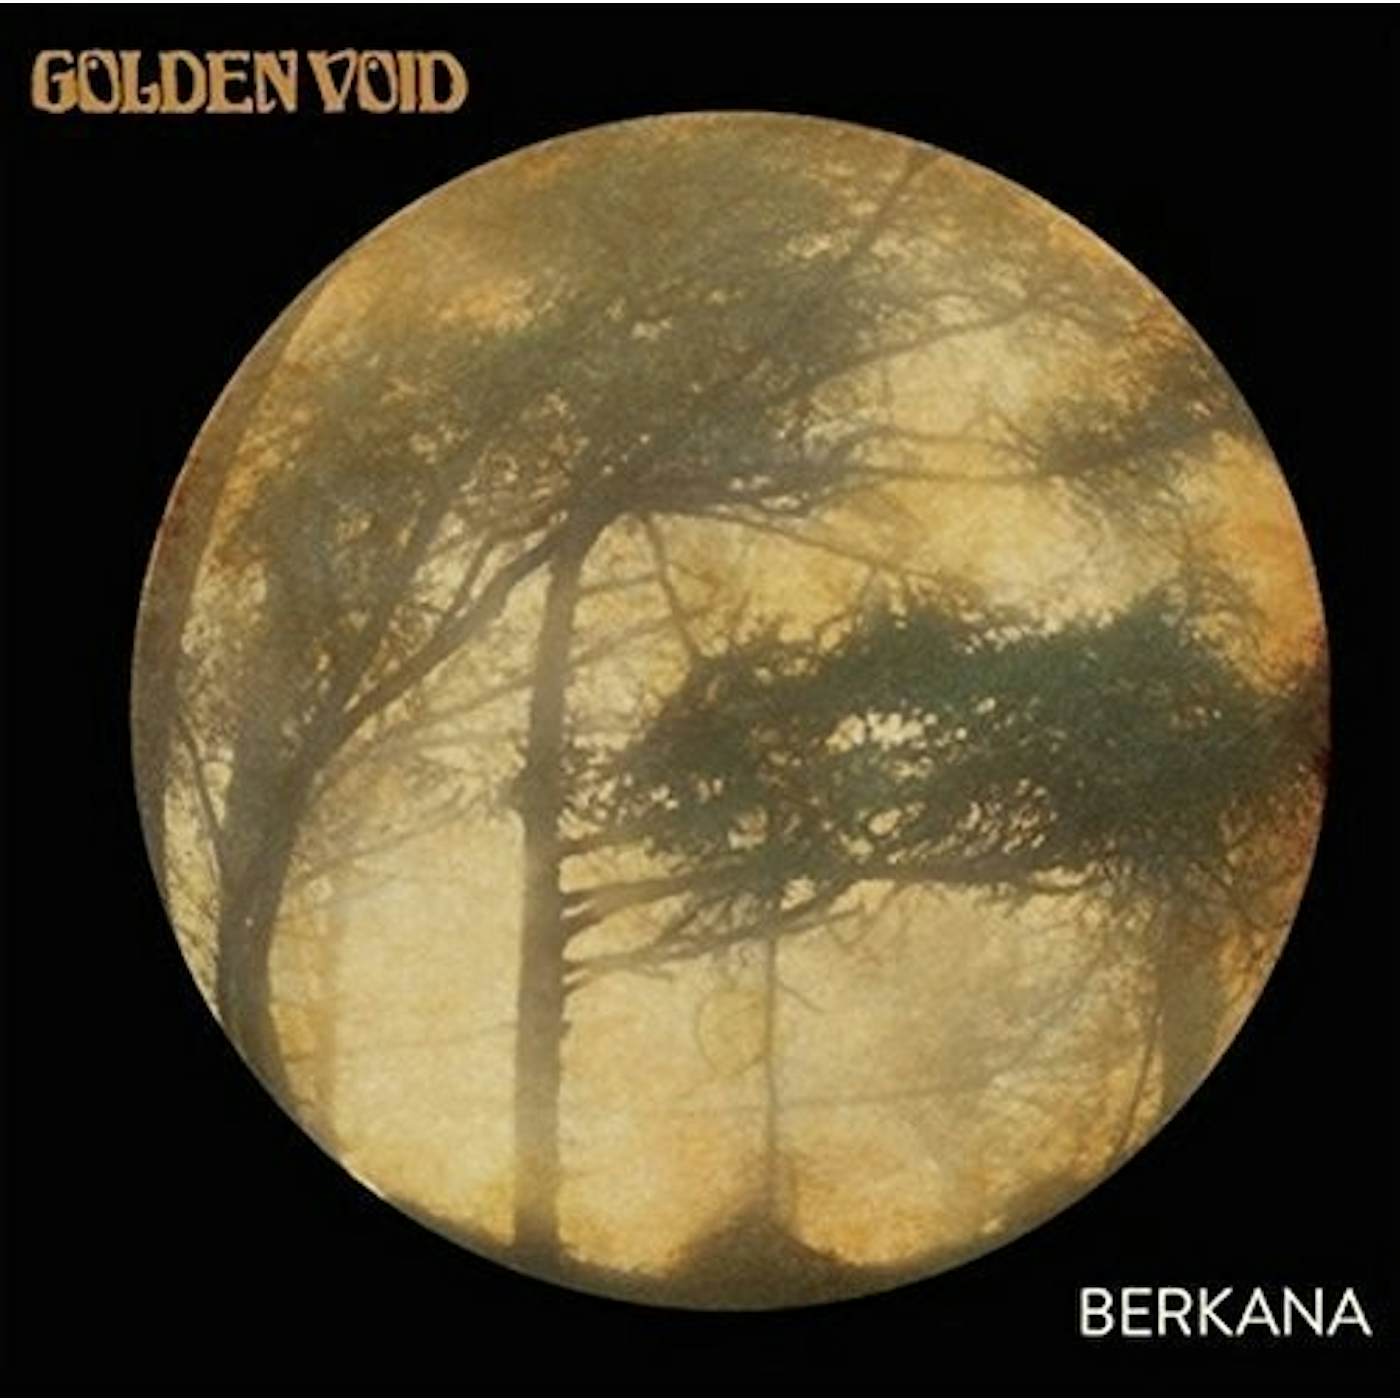 Golden Void BERKANA CD